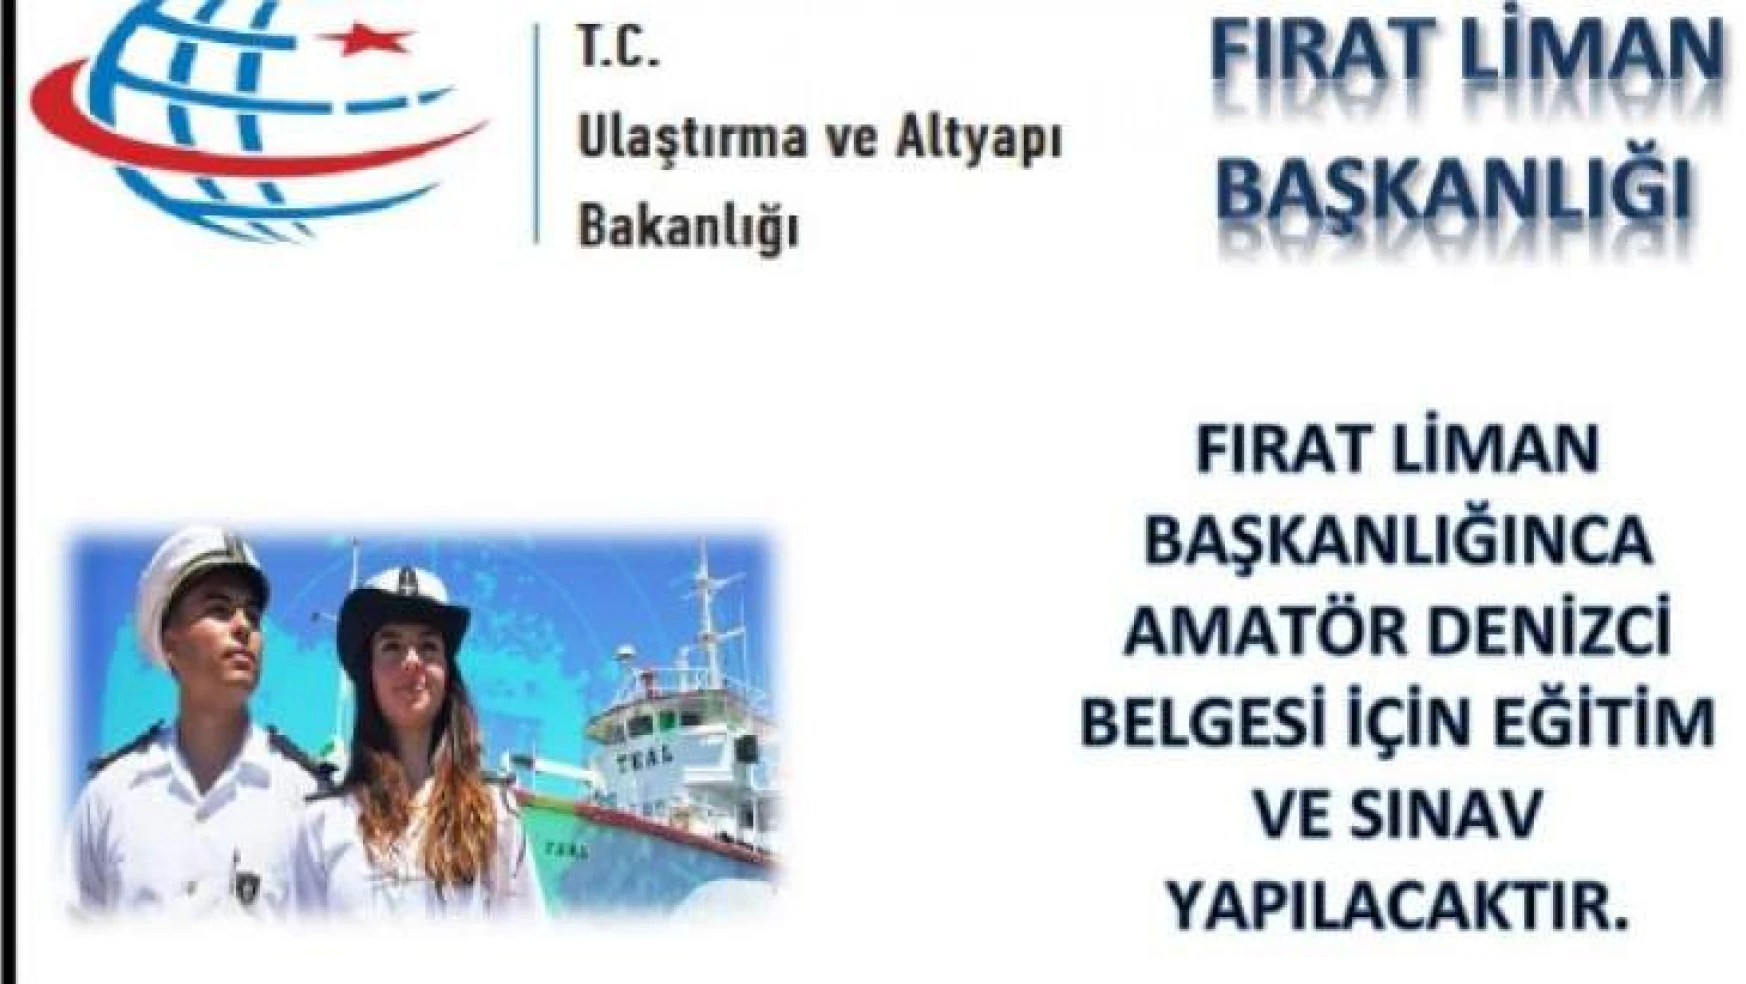 Malatyalı'lara Fırat Liman Başkanlığınca Amatör Denizci Belgesi Verilecek…!